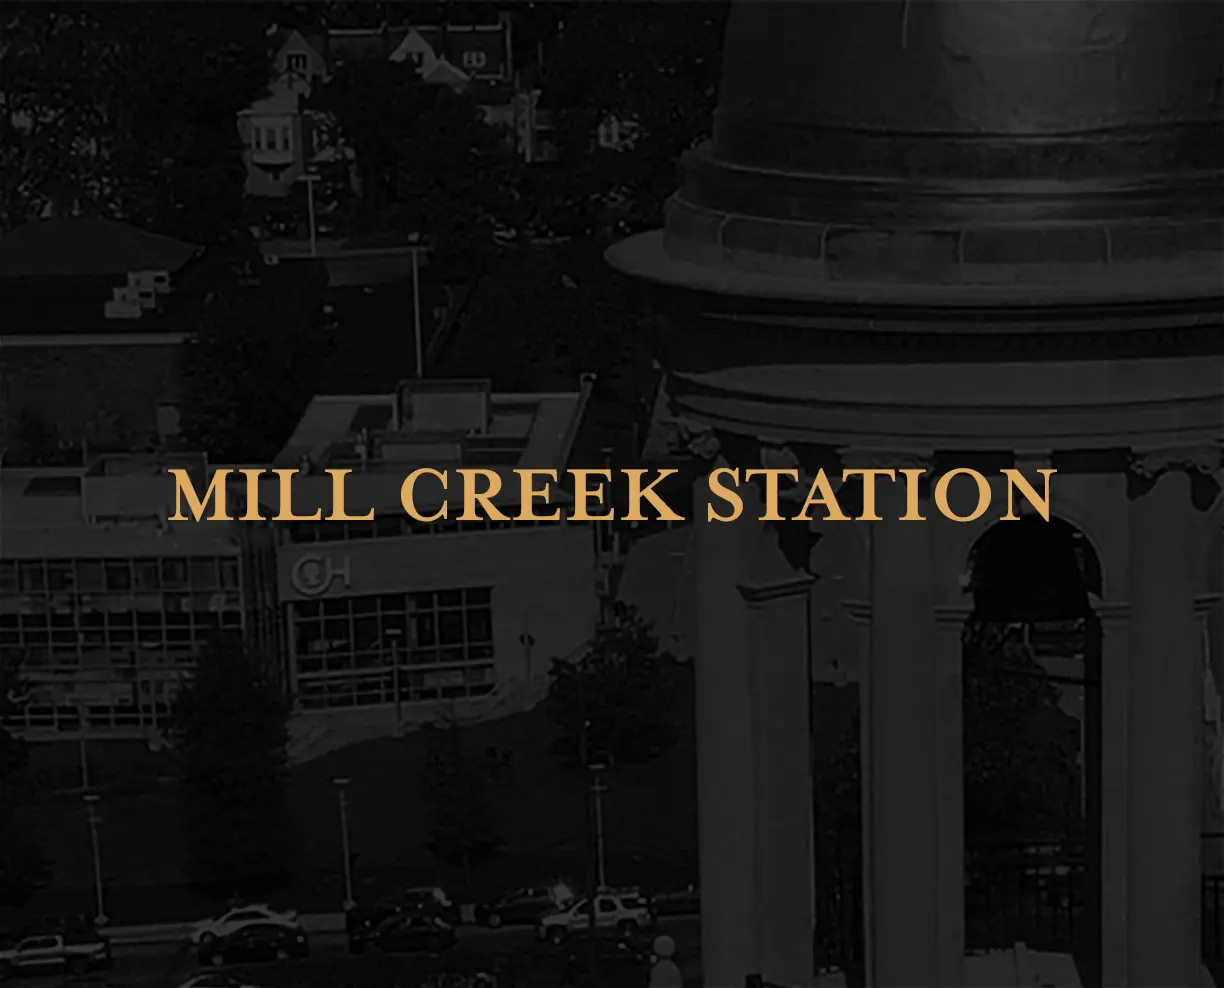 Mill Creek Station